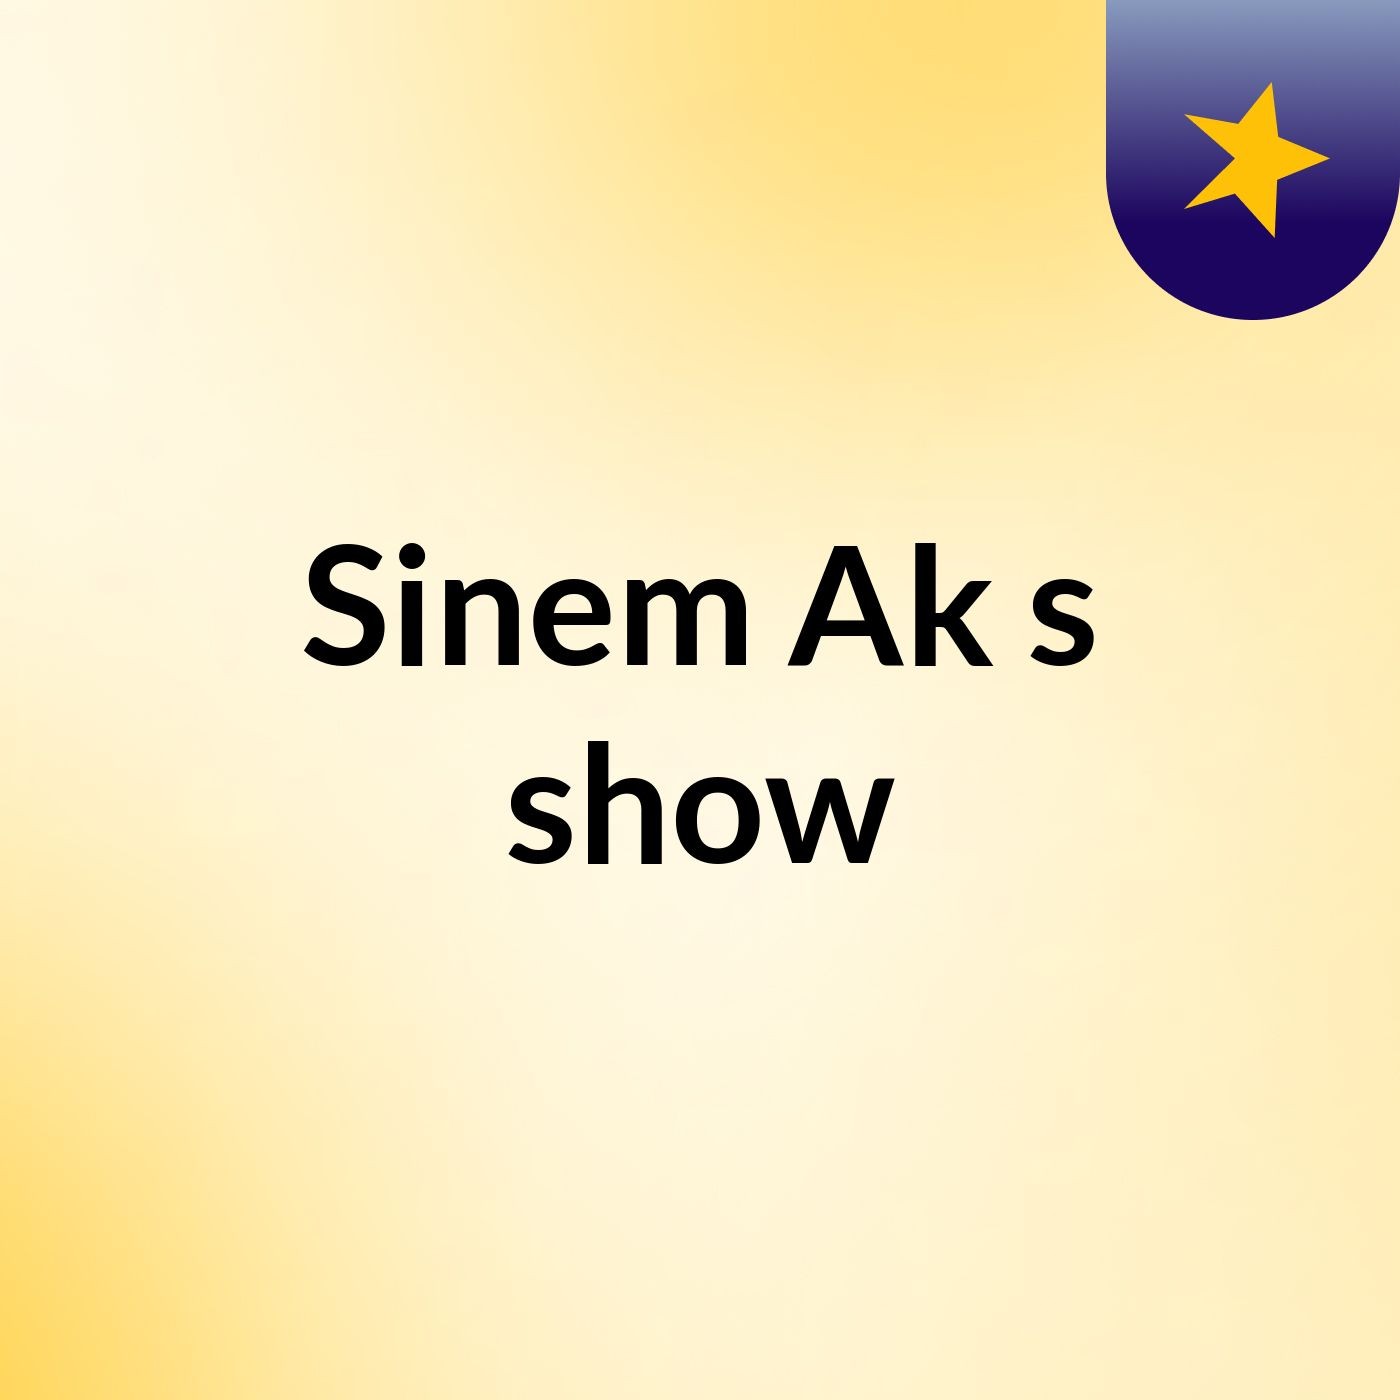 Sinem Ak's show